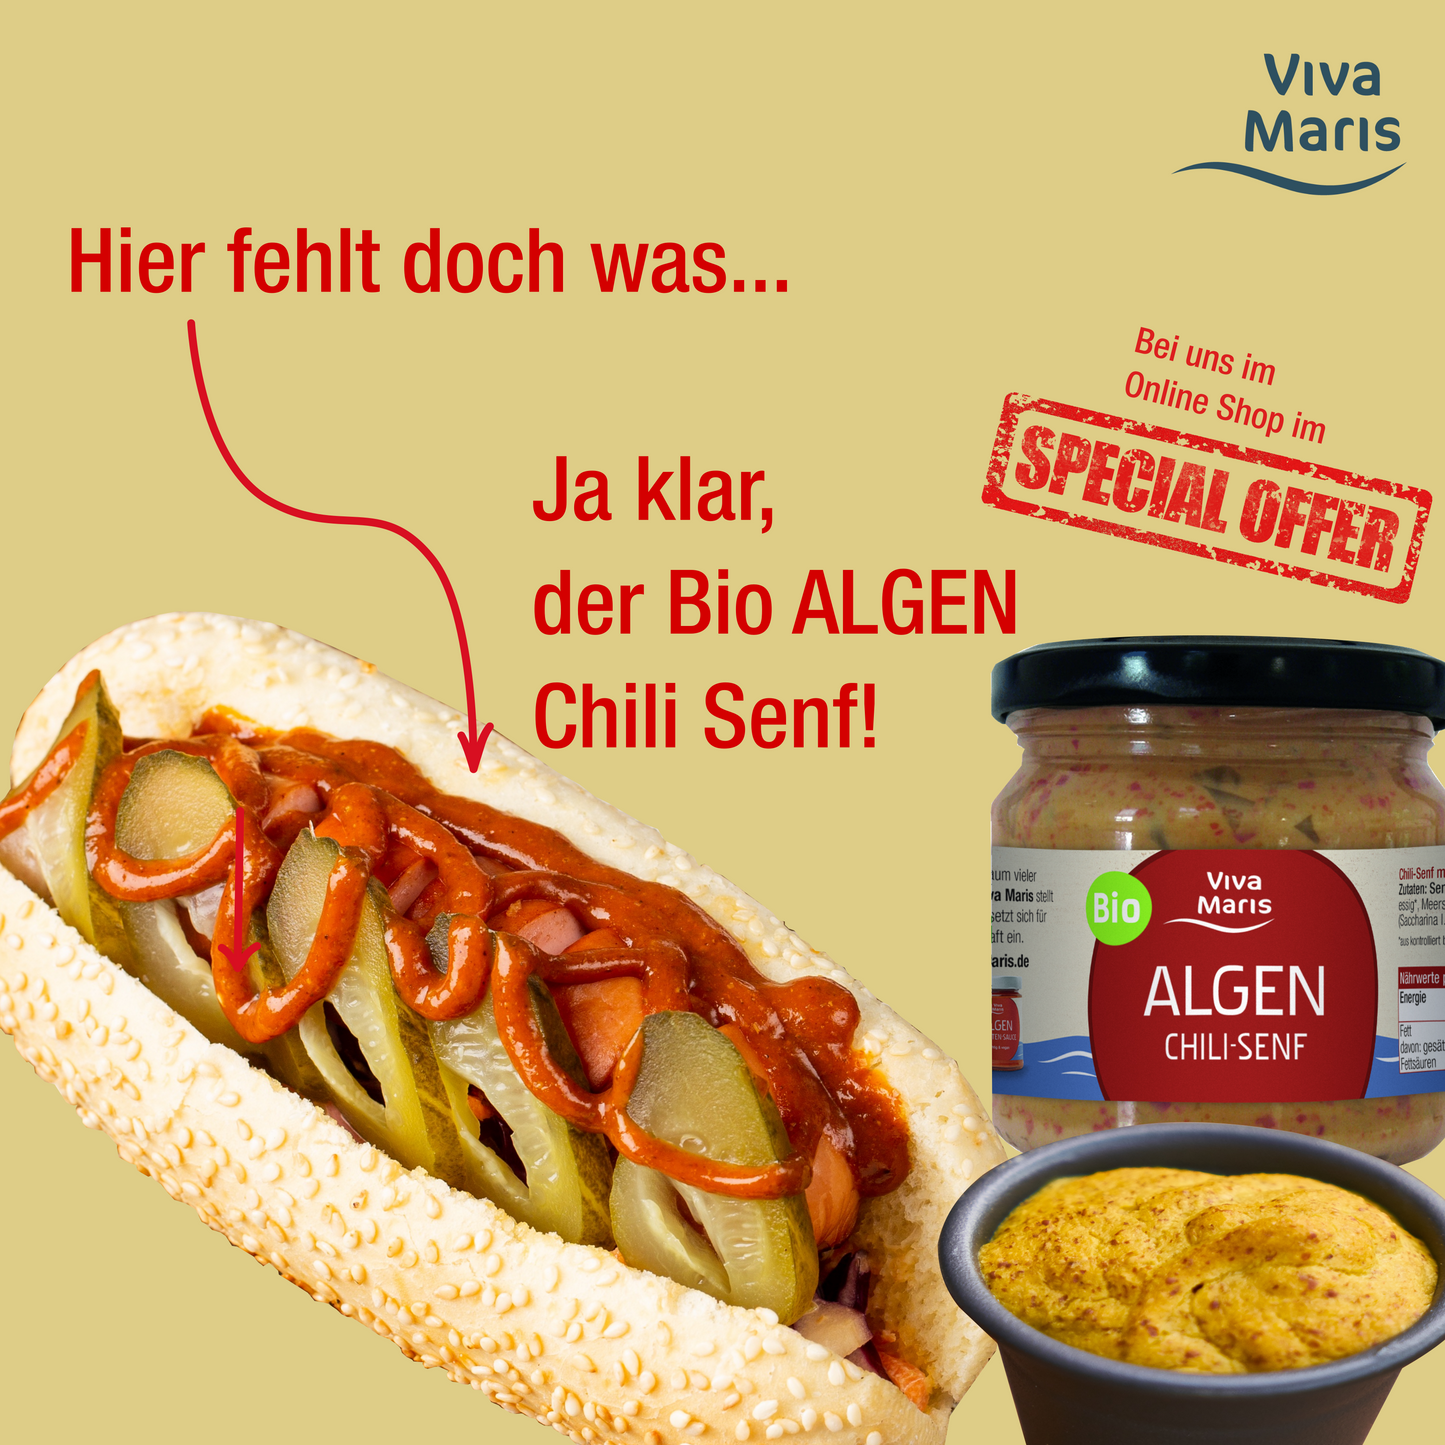 Klassiker Set - Viva Maris ALGEN Wiener, 6x240g & Bio ALGEN Senf Chili + Estragon - SPARE 15%